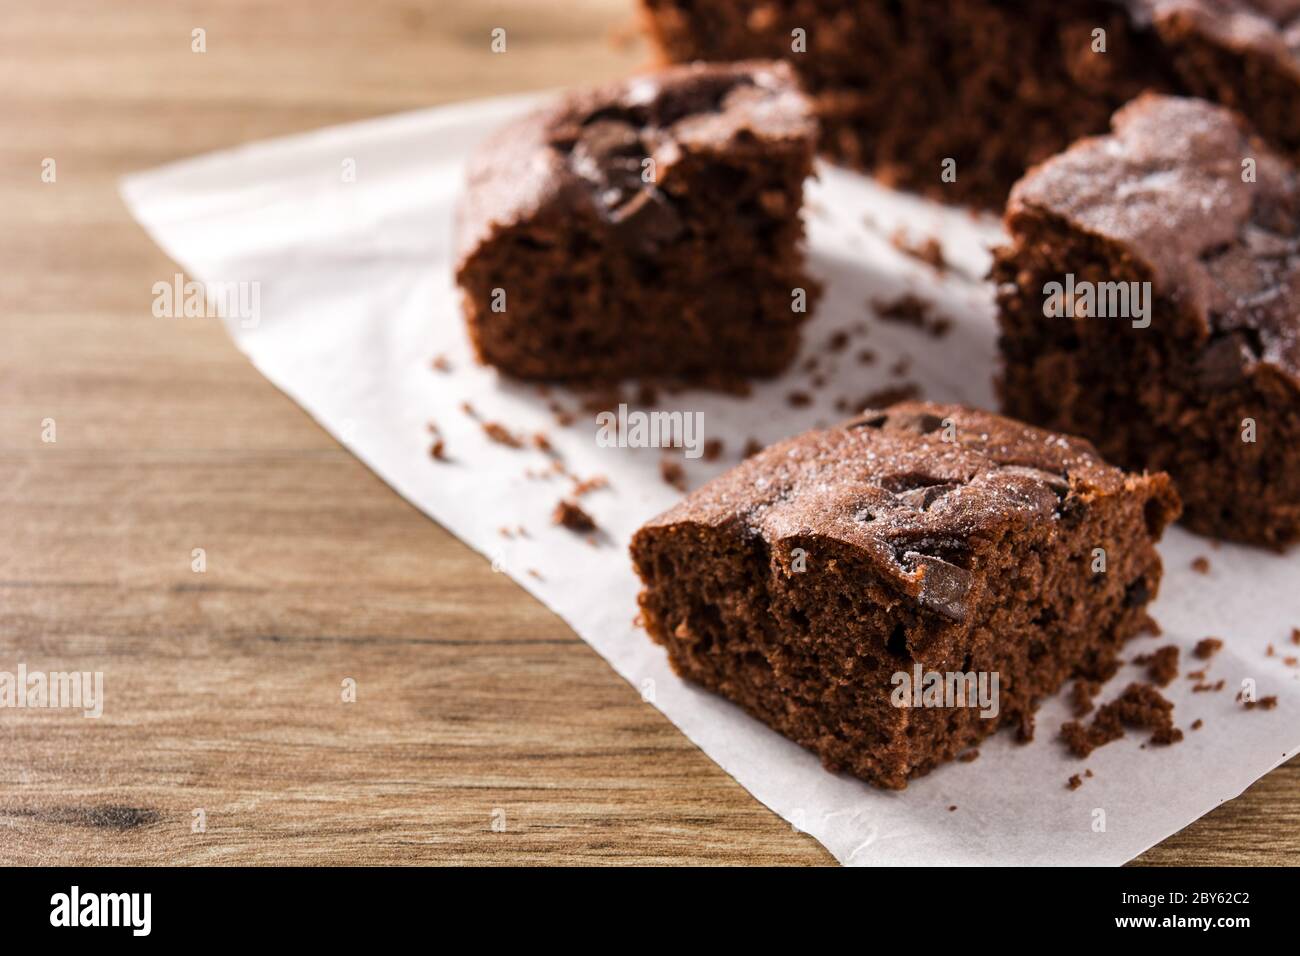 Tranche de gâteau éponge au chocolat sur une table en bois. Copier l'espace Banque D'Images